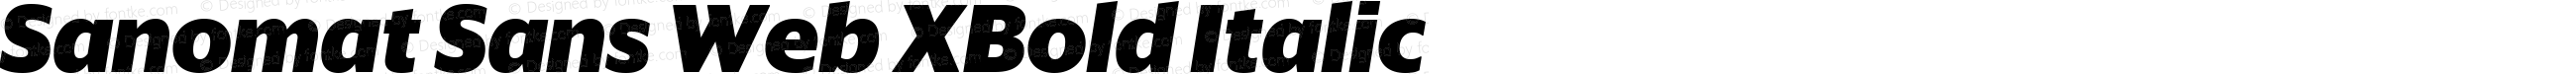 Sanomat Sans Web XBold Italic